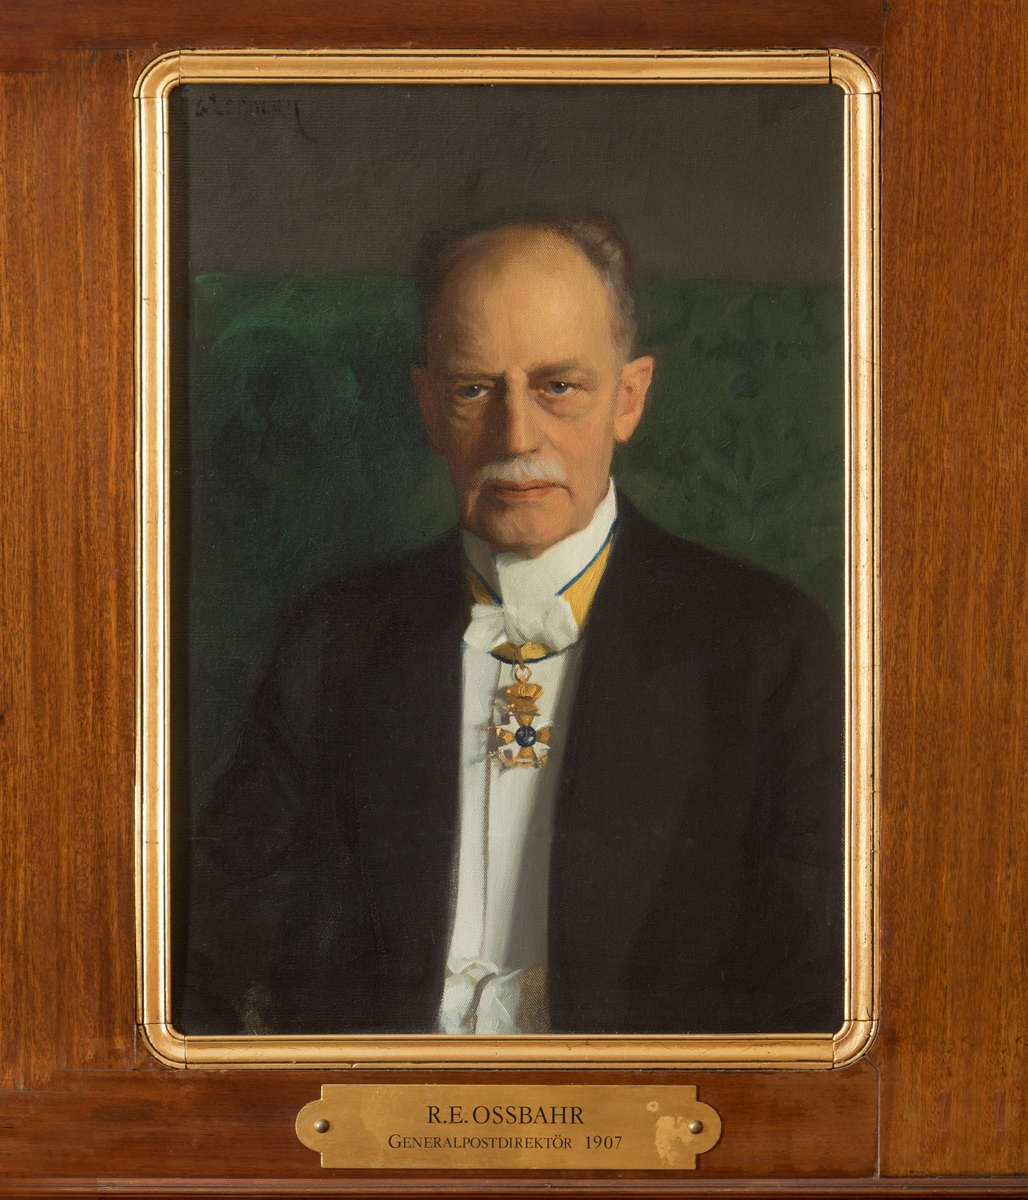 Porträtt i olja av generalpostdirektör R.E. Ossbahr.

En mässingsskylt med text: "R.E. Ossbahr, generalpostdirektör, 1907"
tillhör.